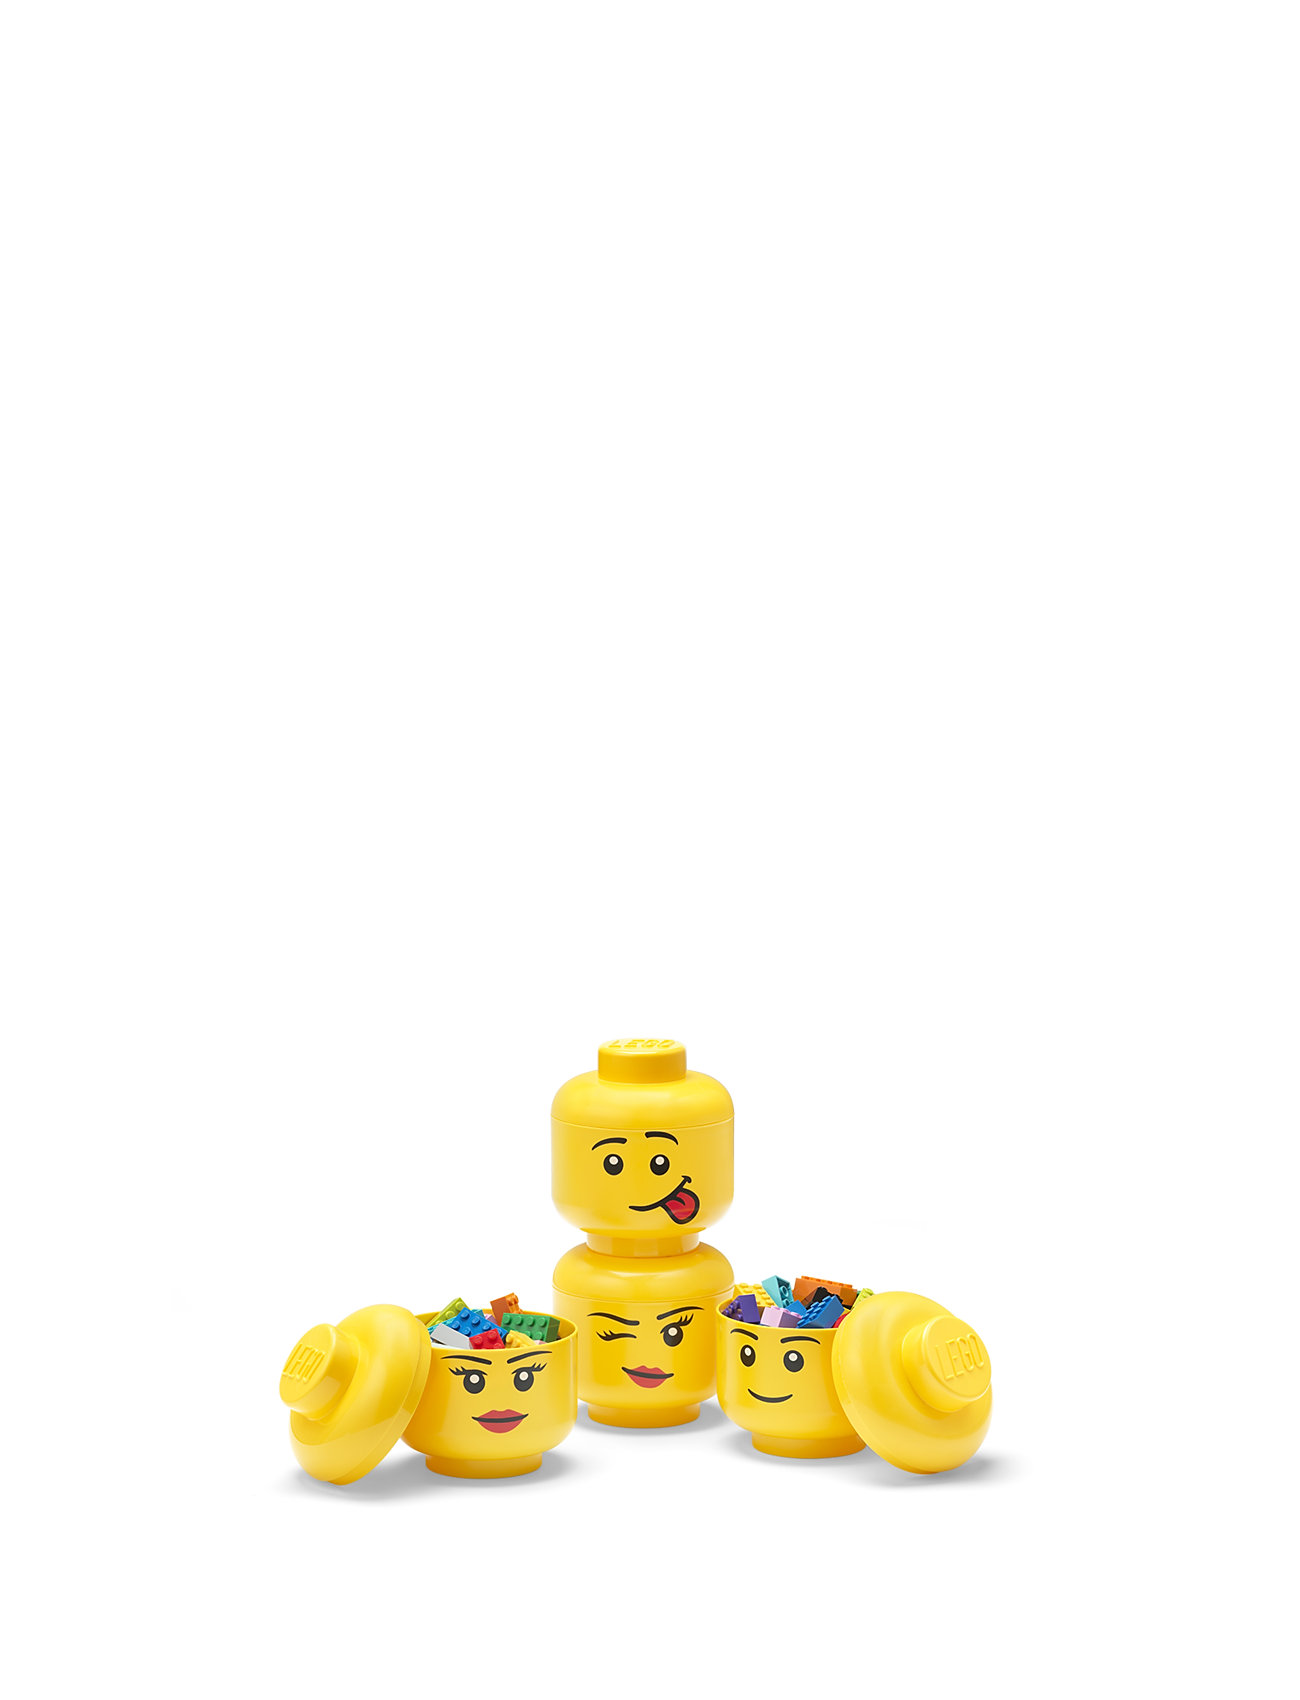 "LEGO STORAGE" "Lego Storage Head Mini Set, 4Pcs Home Kids Decor Boxes Yellow LEGO